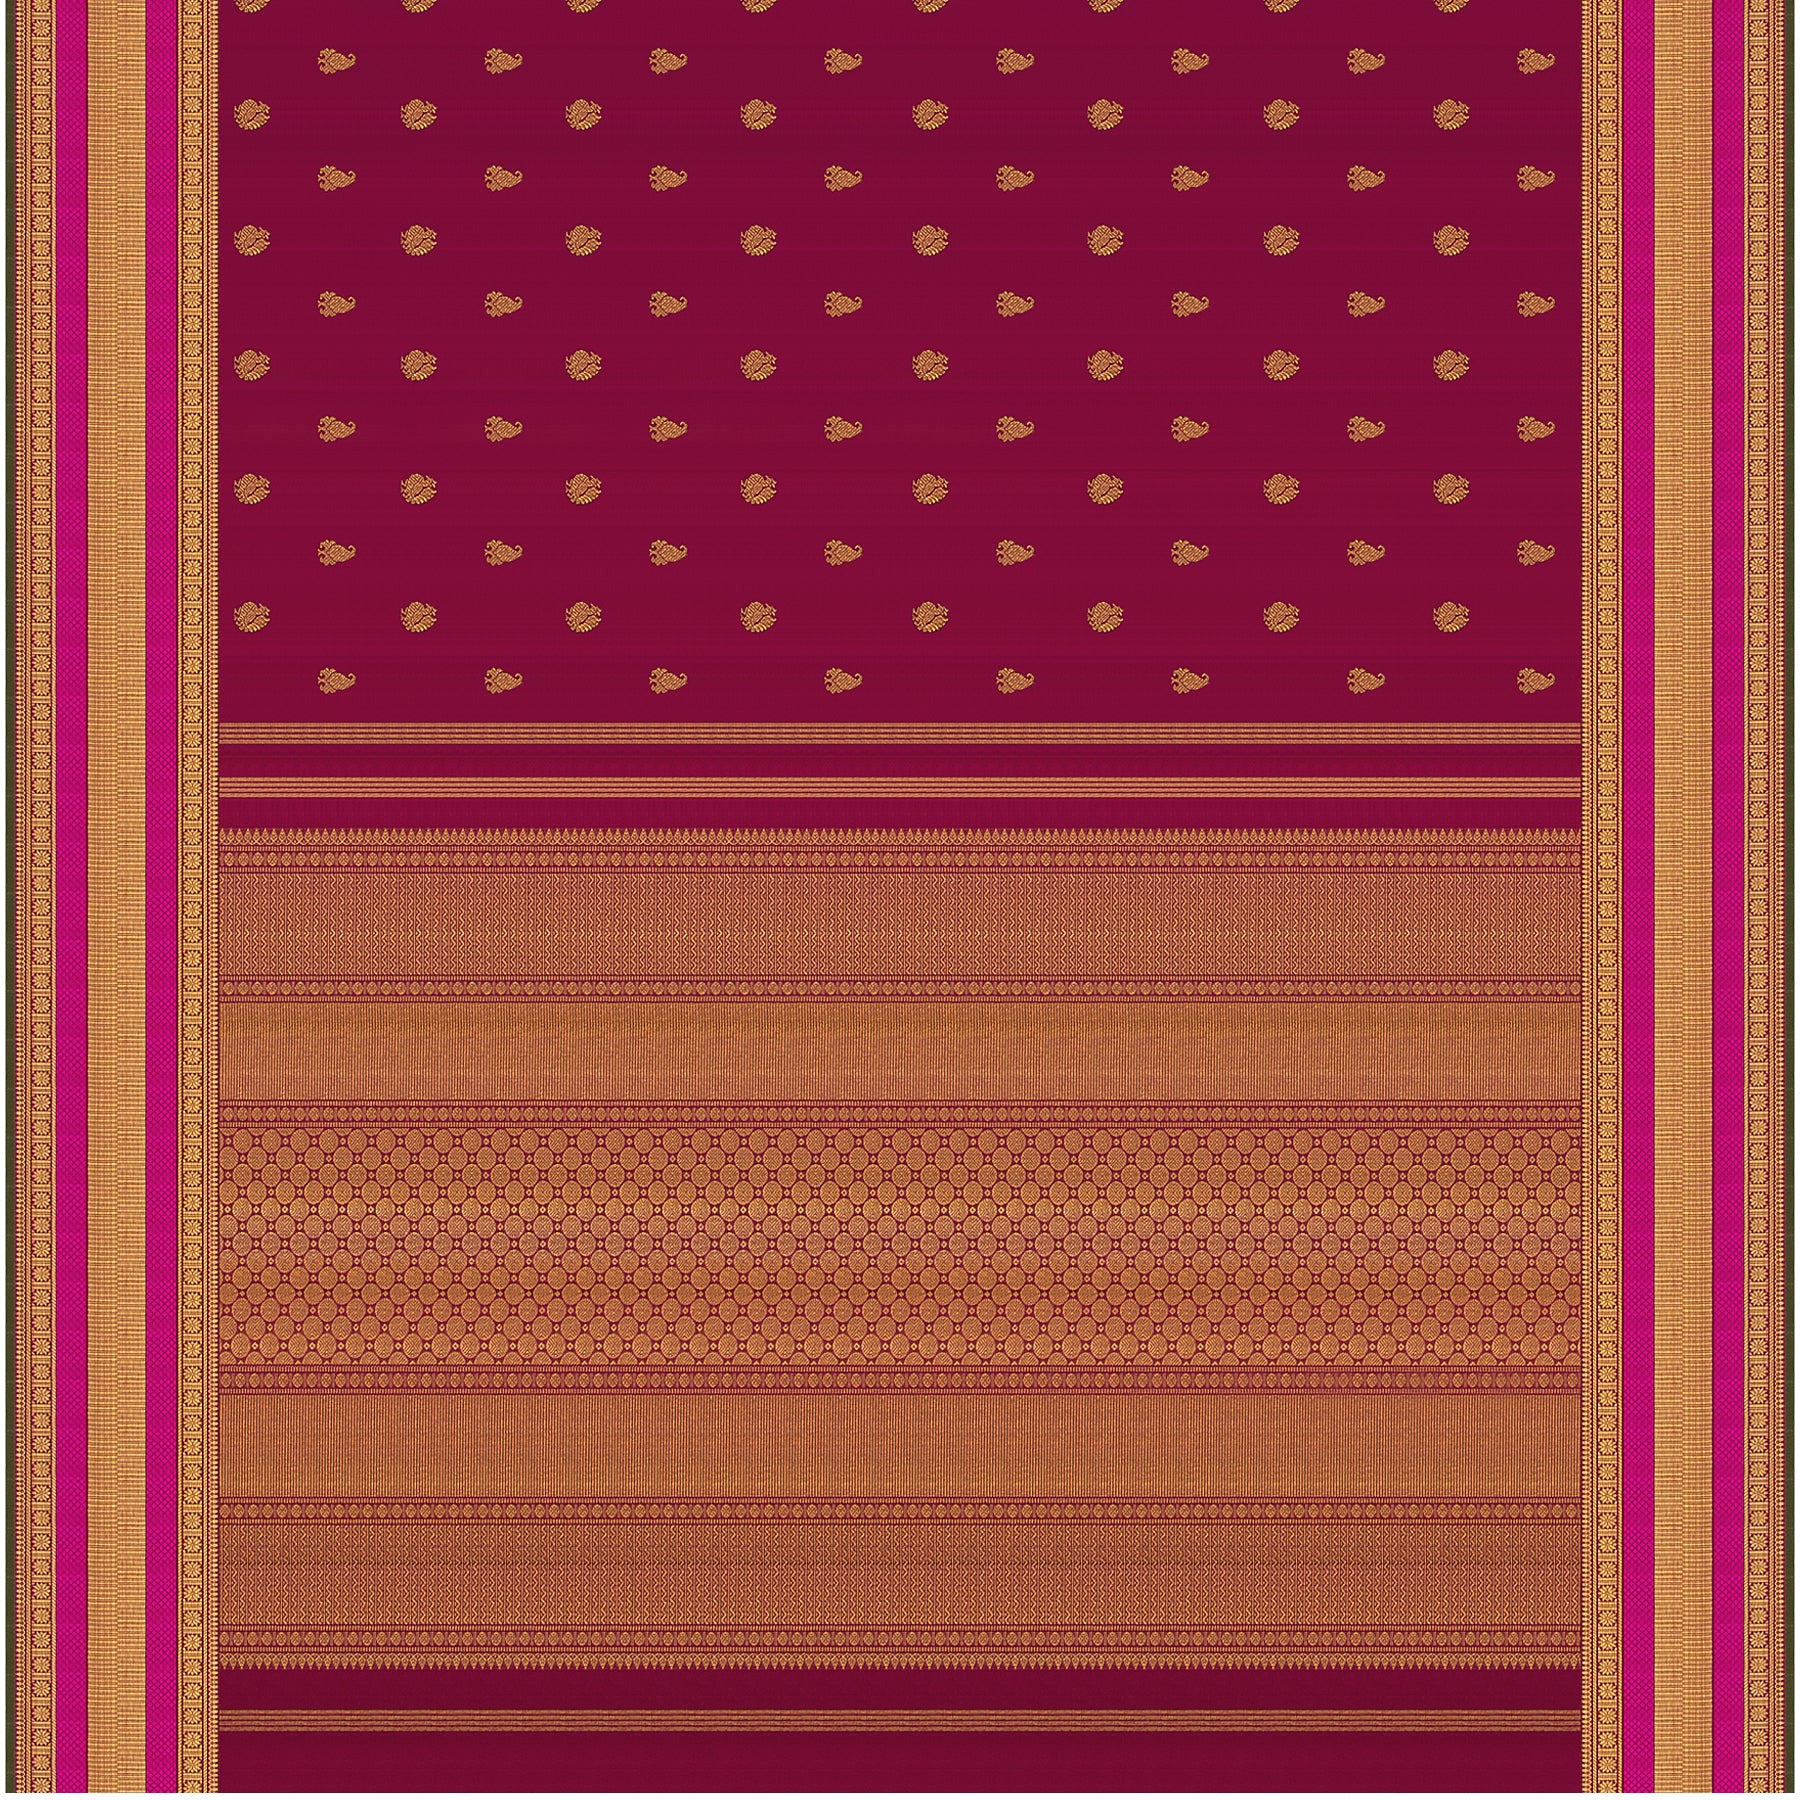 Kanakavalli Kanjivaram Silk Sari 21-110-HS001-09650 - Full View